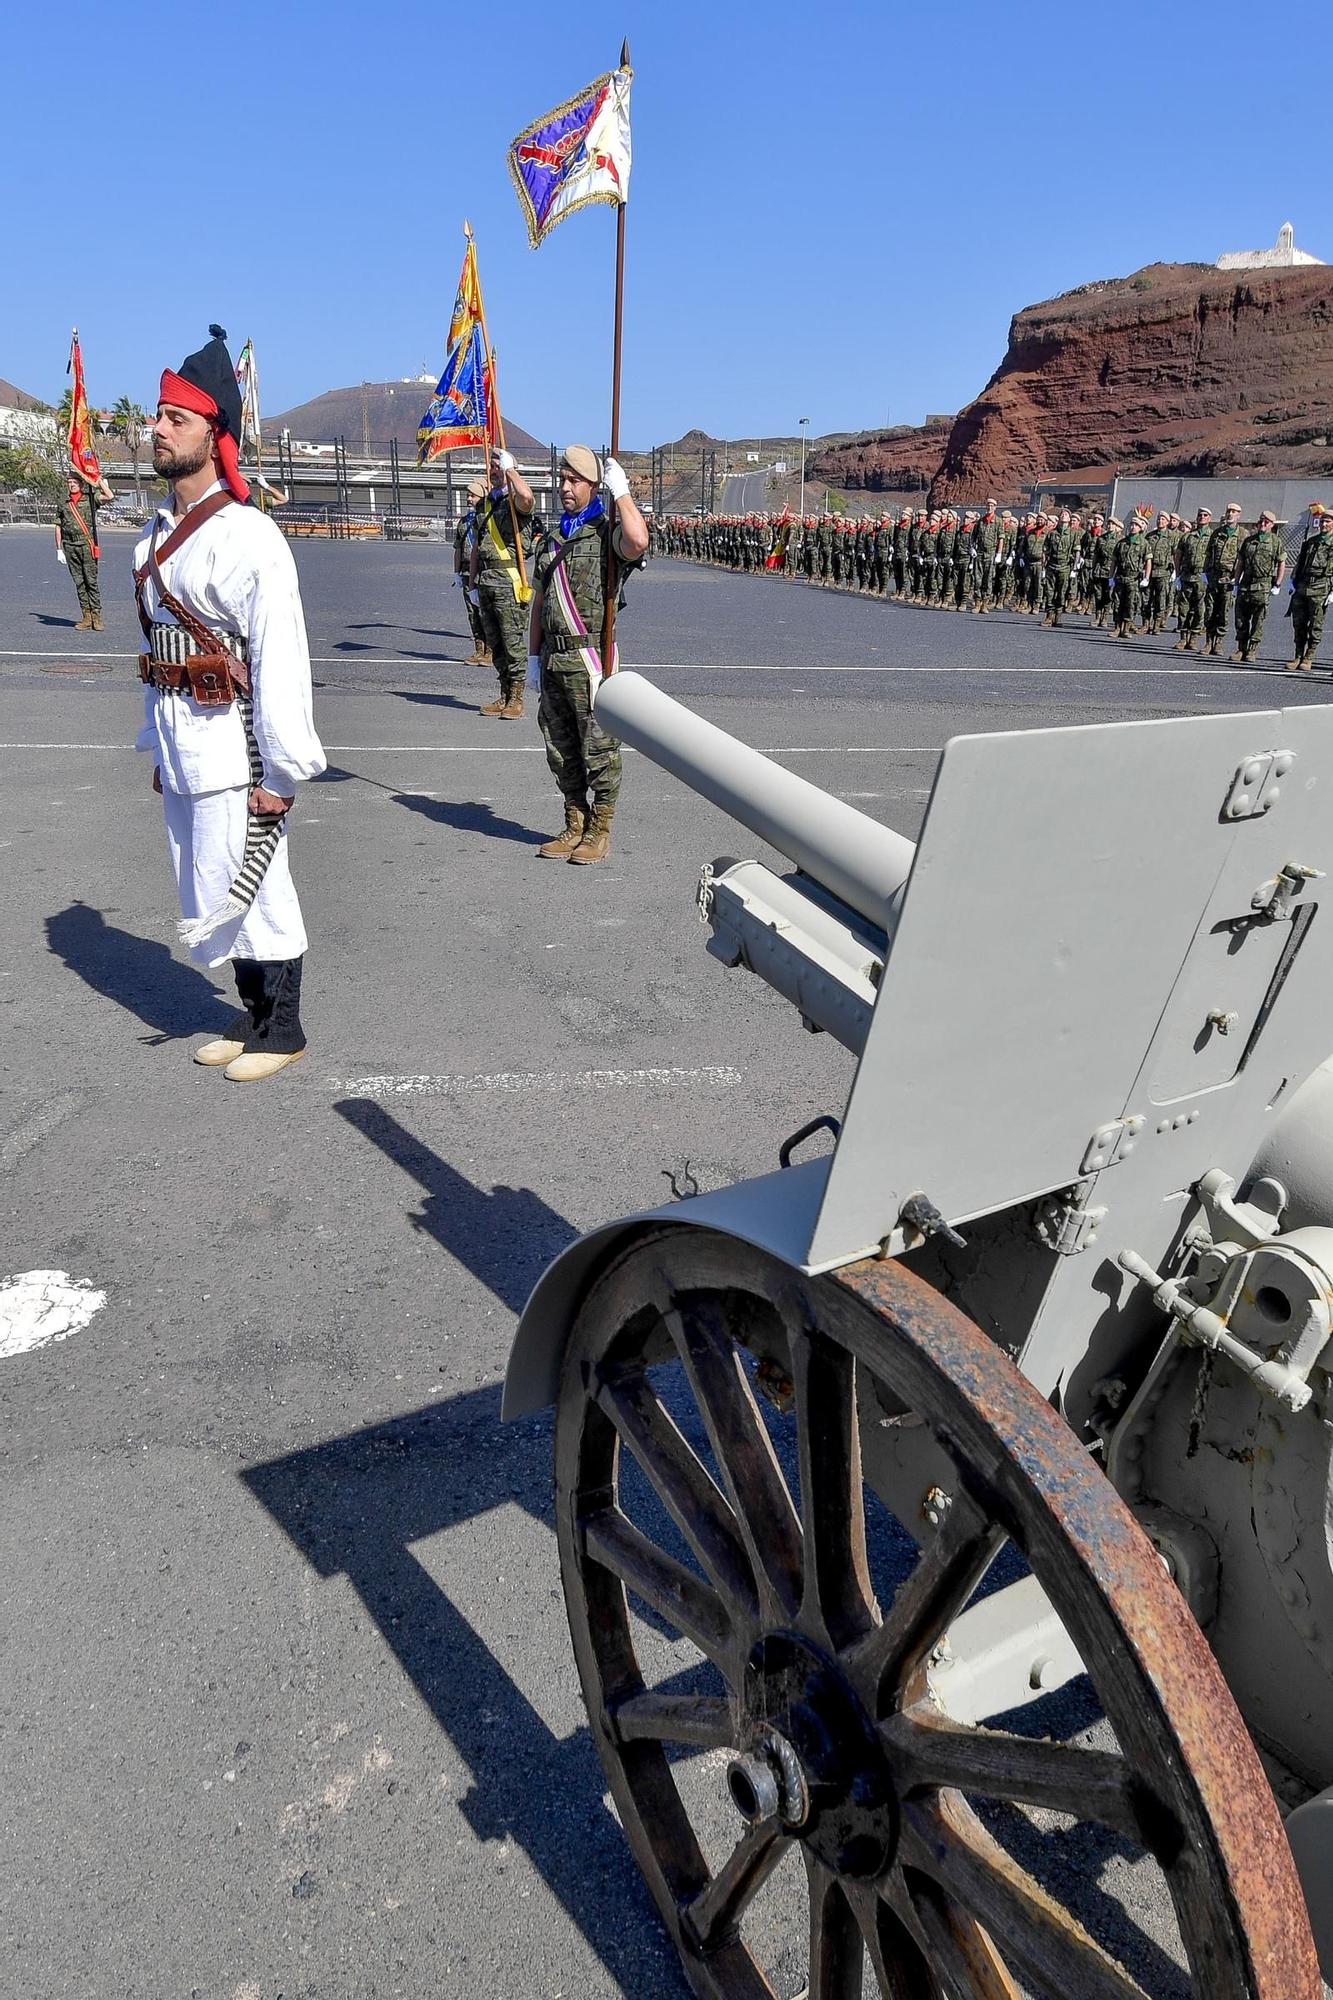 La brigada Canarias XVI celebra su decimosexto aniversario en la Base General Alemán Ramírez